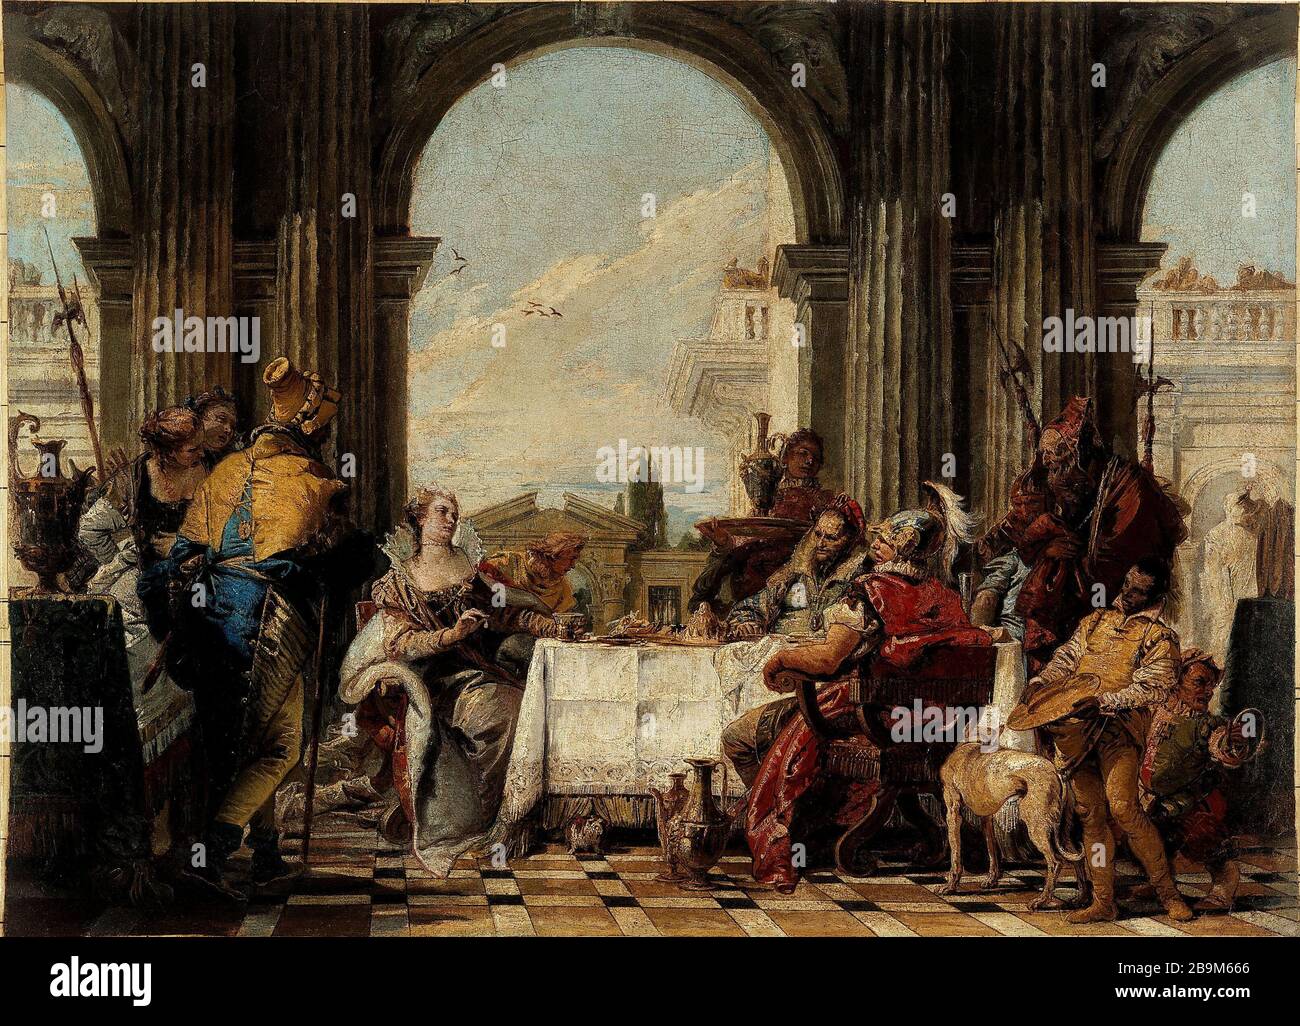 THE BANQUET OF CLEOPATRA Giambattista Tiepolo (1696-1770). 'Le Banquet de Cléopatre, entre 1742 et 1743'. Huile sur toile. Paris, musée Cognacq-Jay. Stock Photo